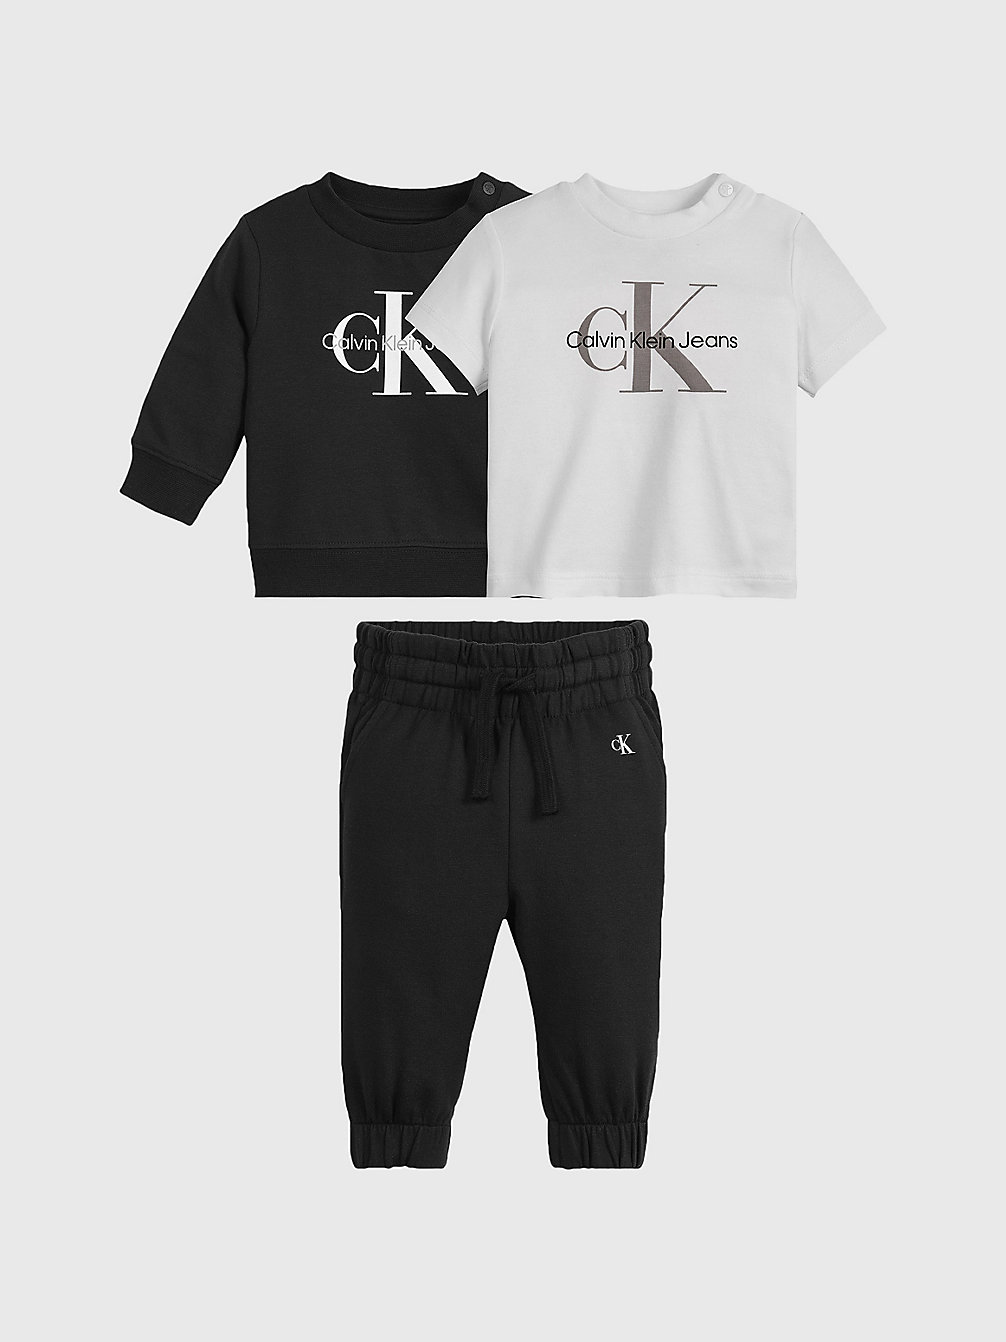 Coffret Cadeau Nouveau-Né > CK BLACK > undefined newborn > Calvin Klein